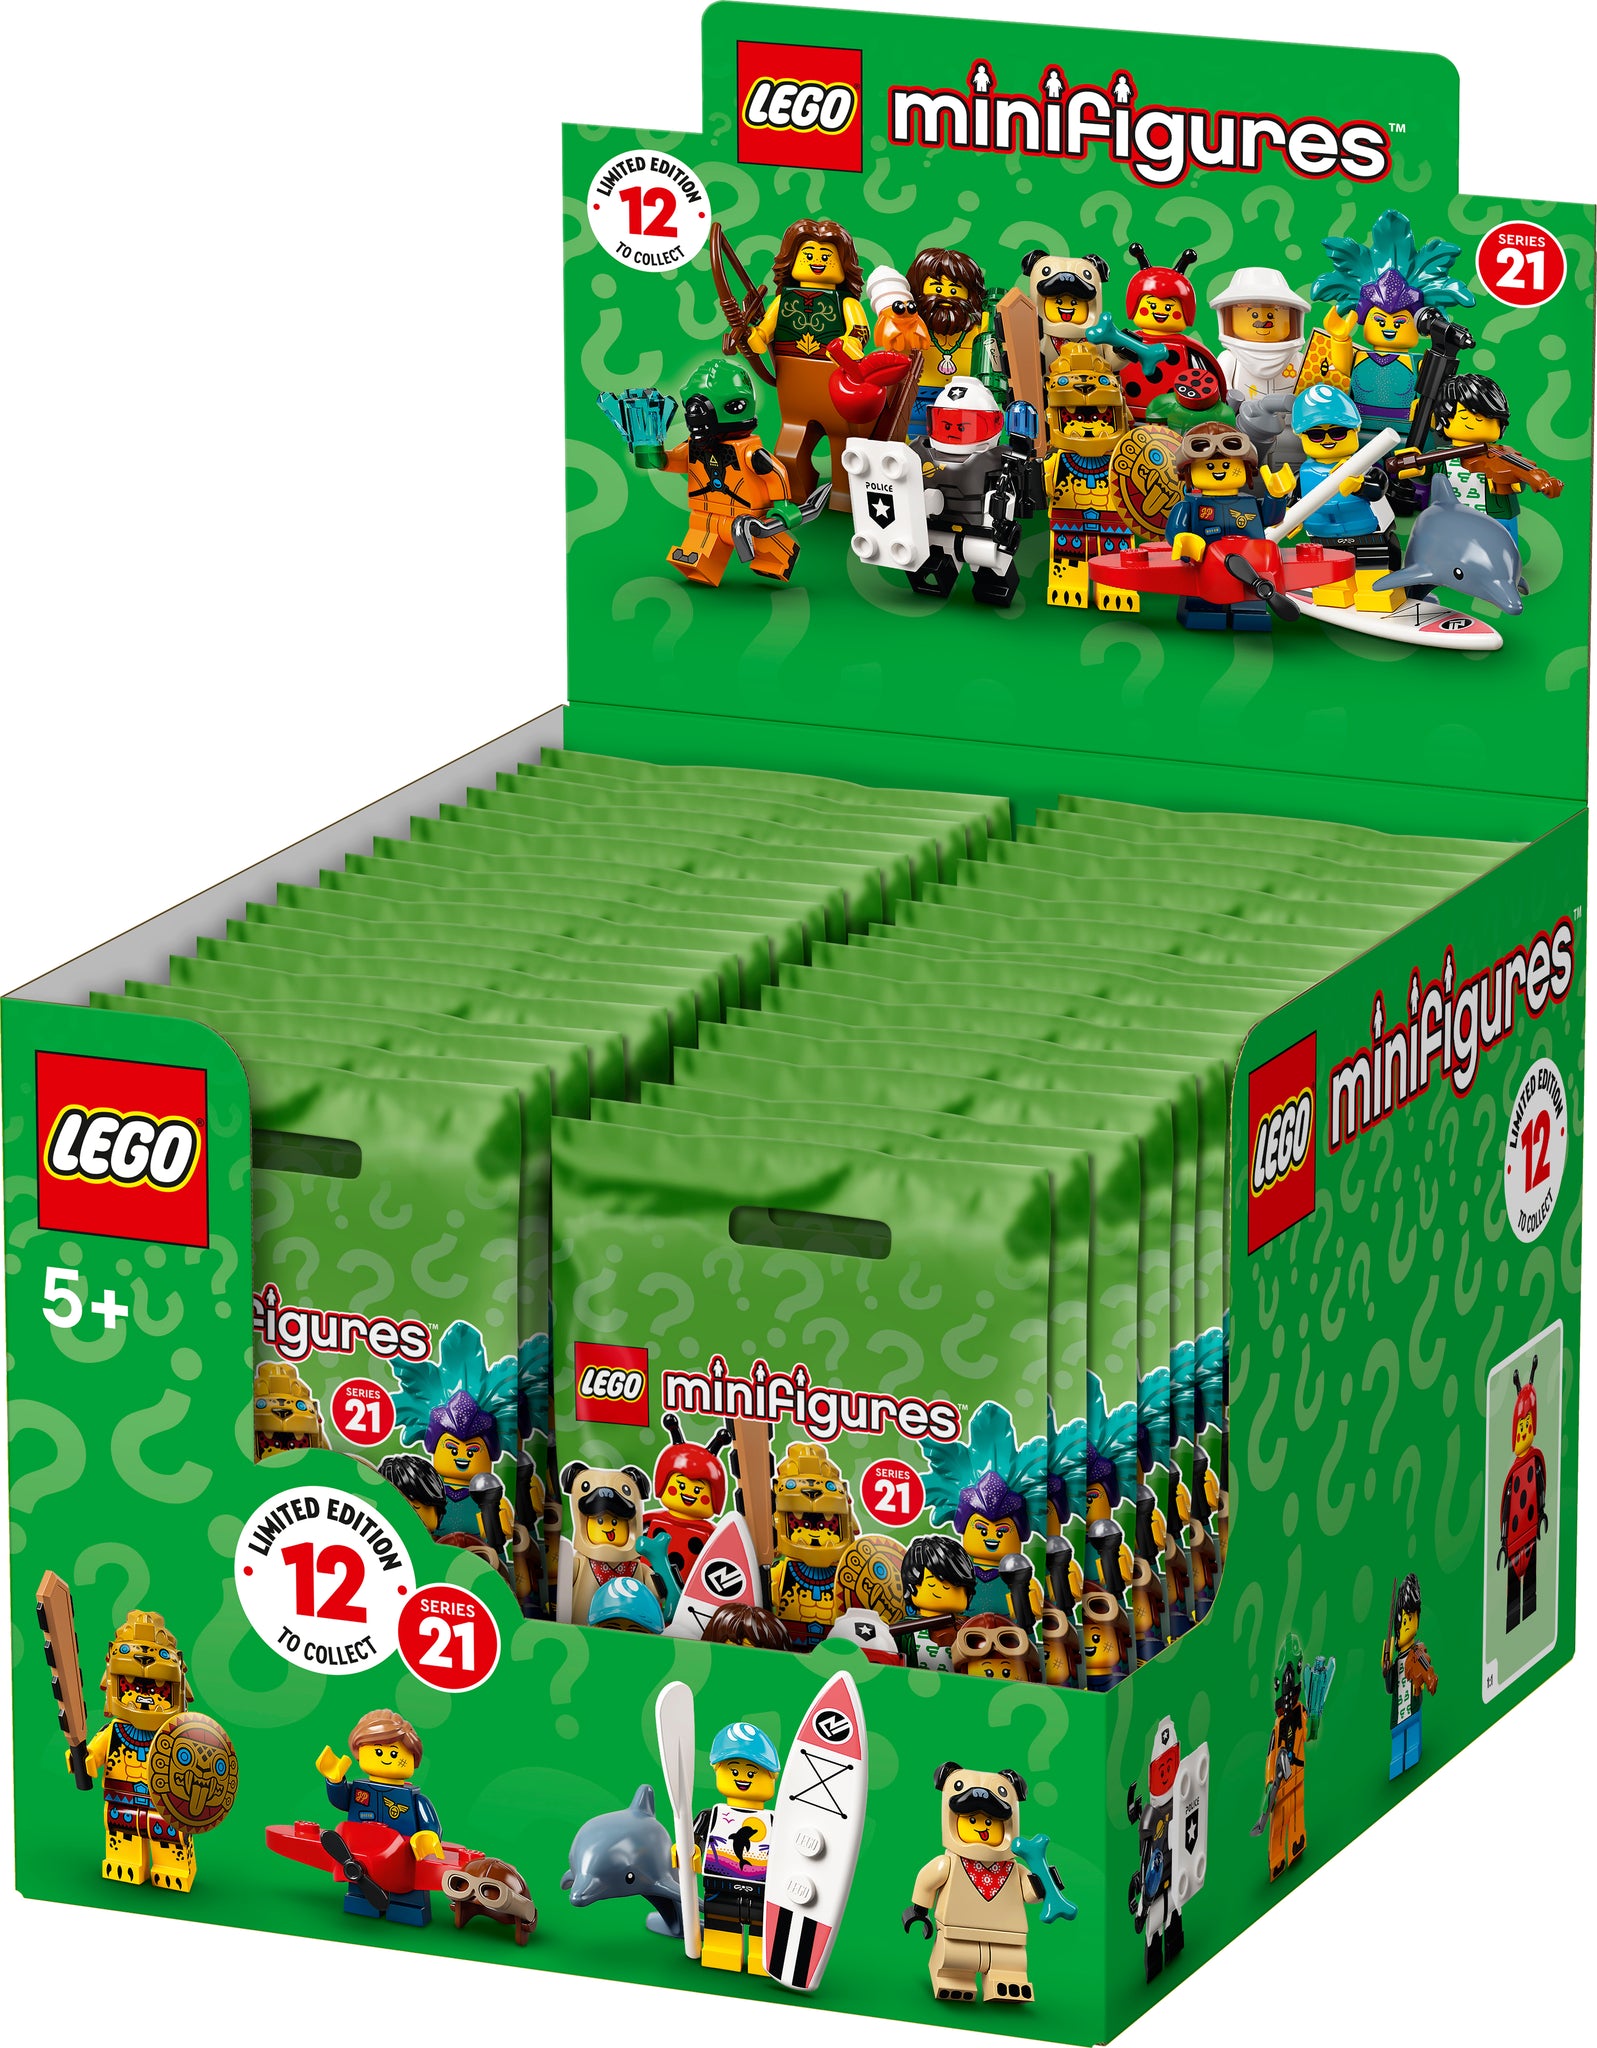 レゴ レゴ ミニフィギュア シリーズ 21 箱売り レゴランド ディスカバリー センター公式オンラインショップ